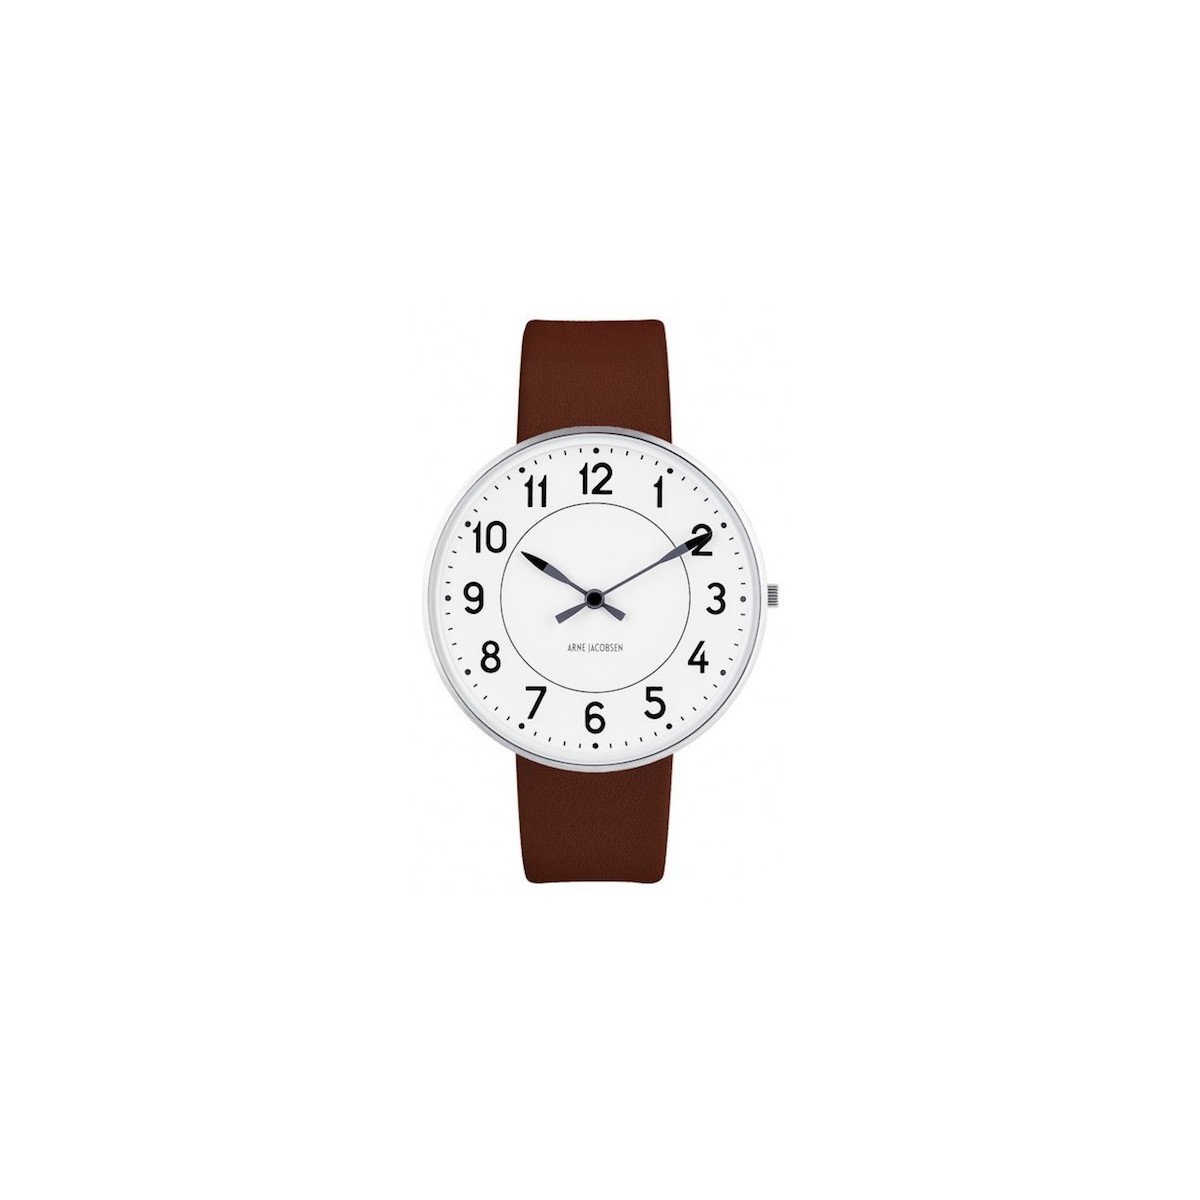 ÉPUISÉ Ø40mm - bracelet cuir marron / fond blanc / cadre métal brossé - montre Station